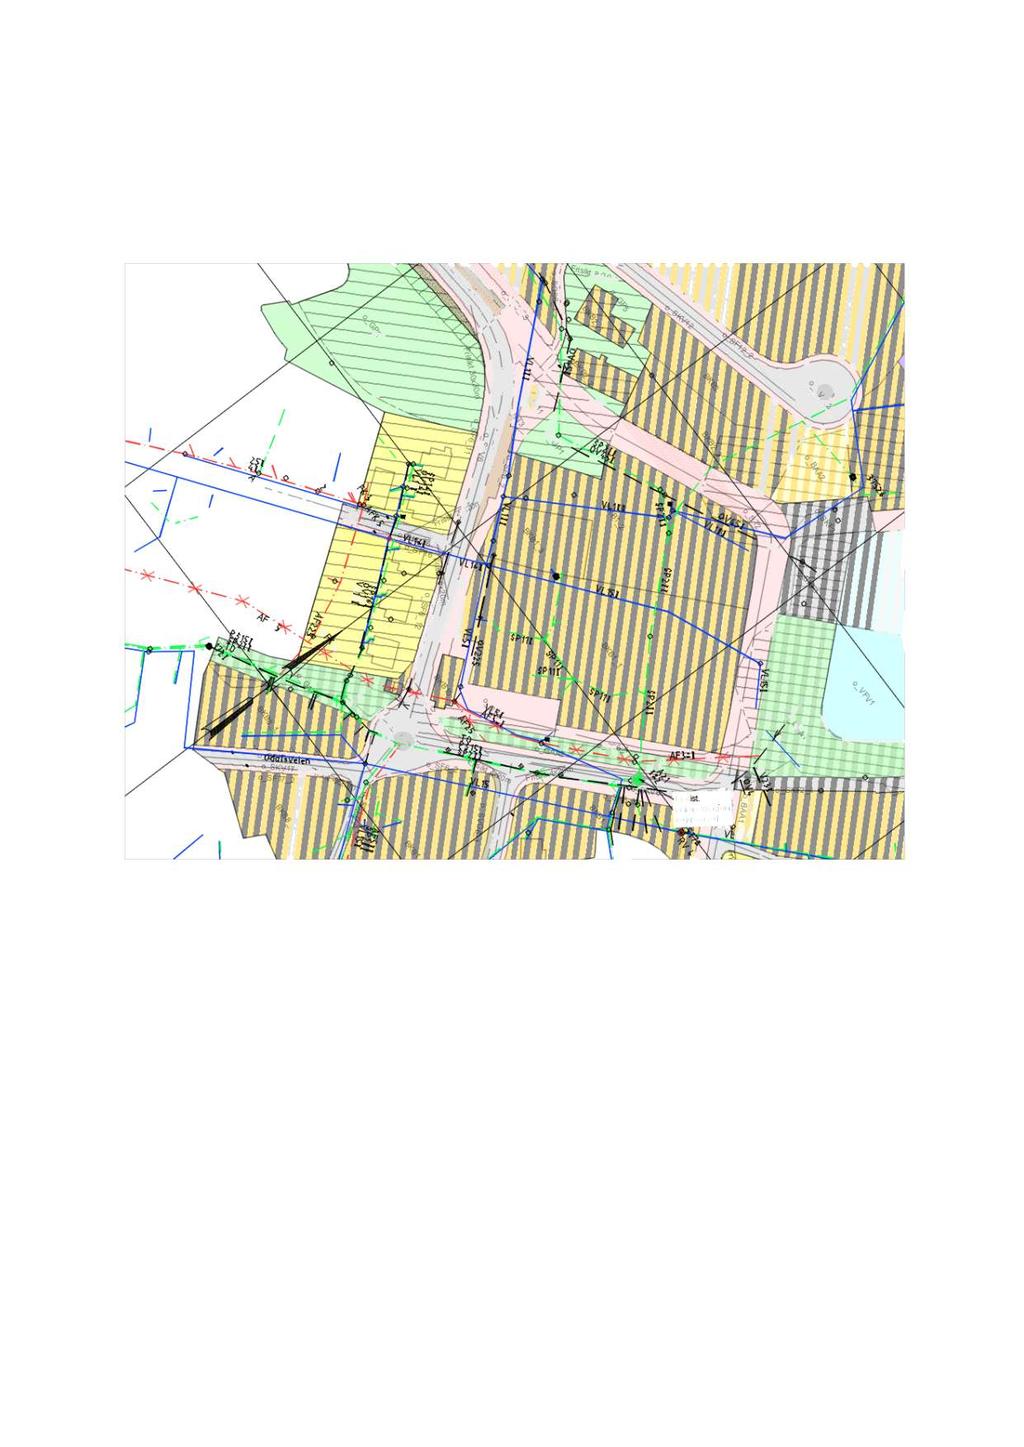 10 4 FREMTIDIG VA-ANLEGG Eksisterende kommunalt anlegg (inkl. pumpestasjon på Bryggeveien) er i konflikt med planlagte utbygging og må derfor legges om.